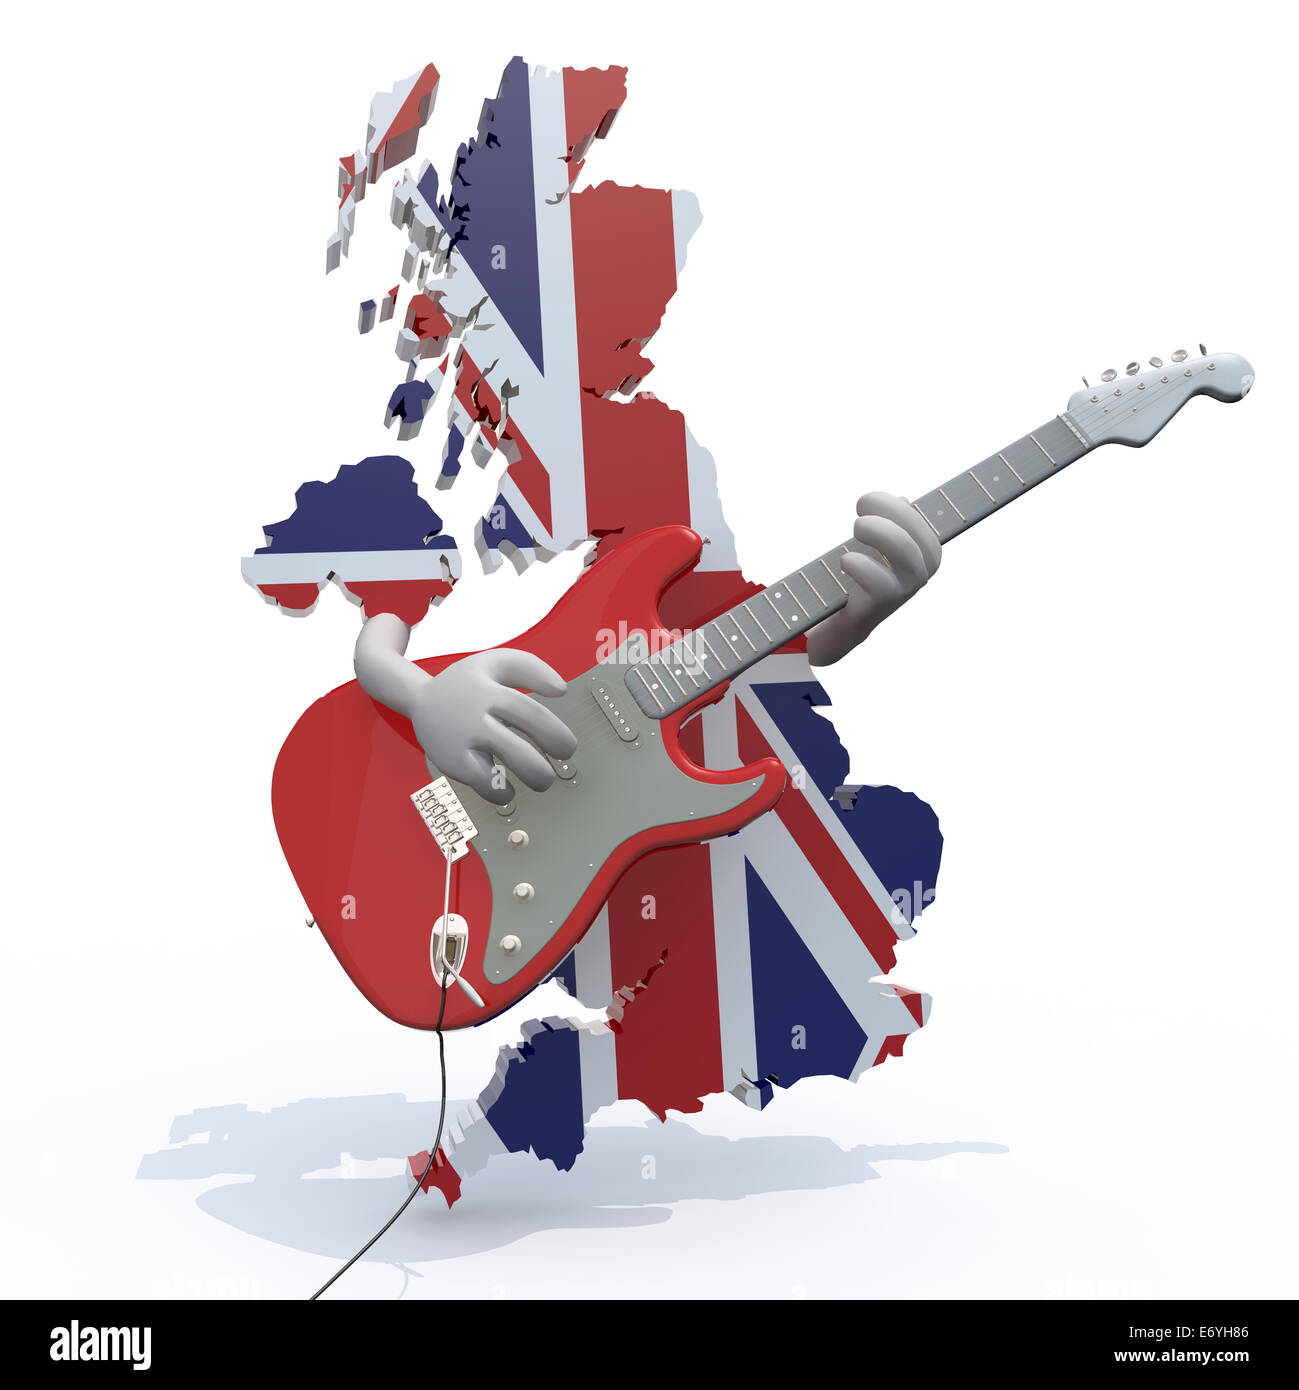 Inghilterra mappa con le armi che suonare la chitarra elettrica, 3d illustrazione Foto Stock